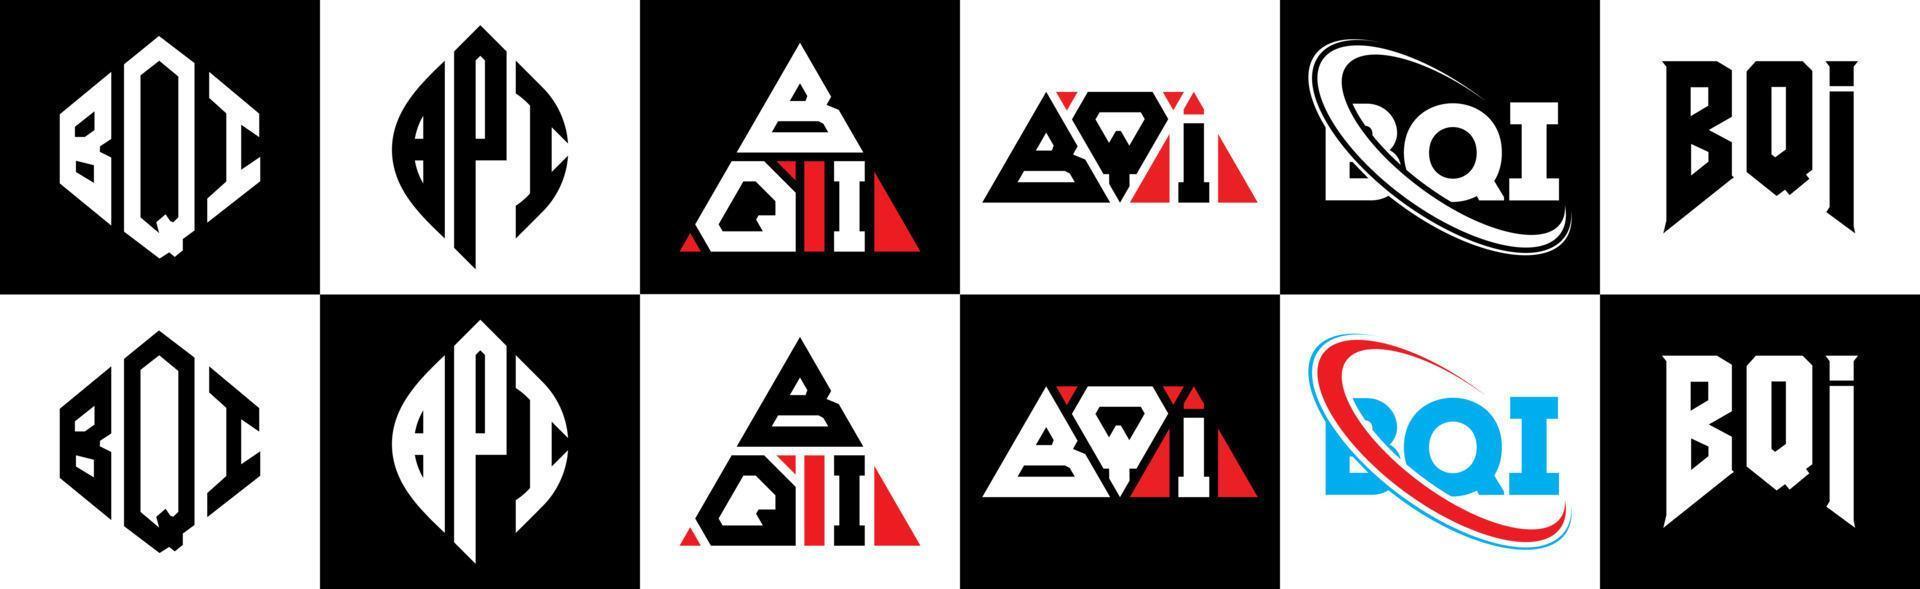 création de logo de lettre bqi en six styles. polygone bqi, cercle, triangle, hexagone, style plat et simple avec logo de lettre de variation de couleur noir et blanc dans un plan de travail. logo bqi minimaliste et classique vecteur